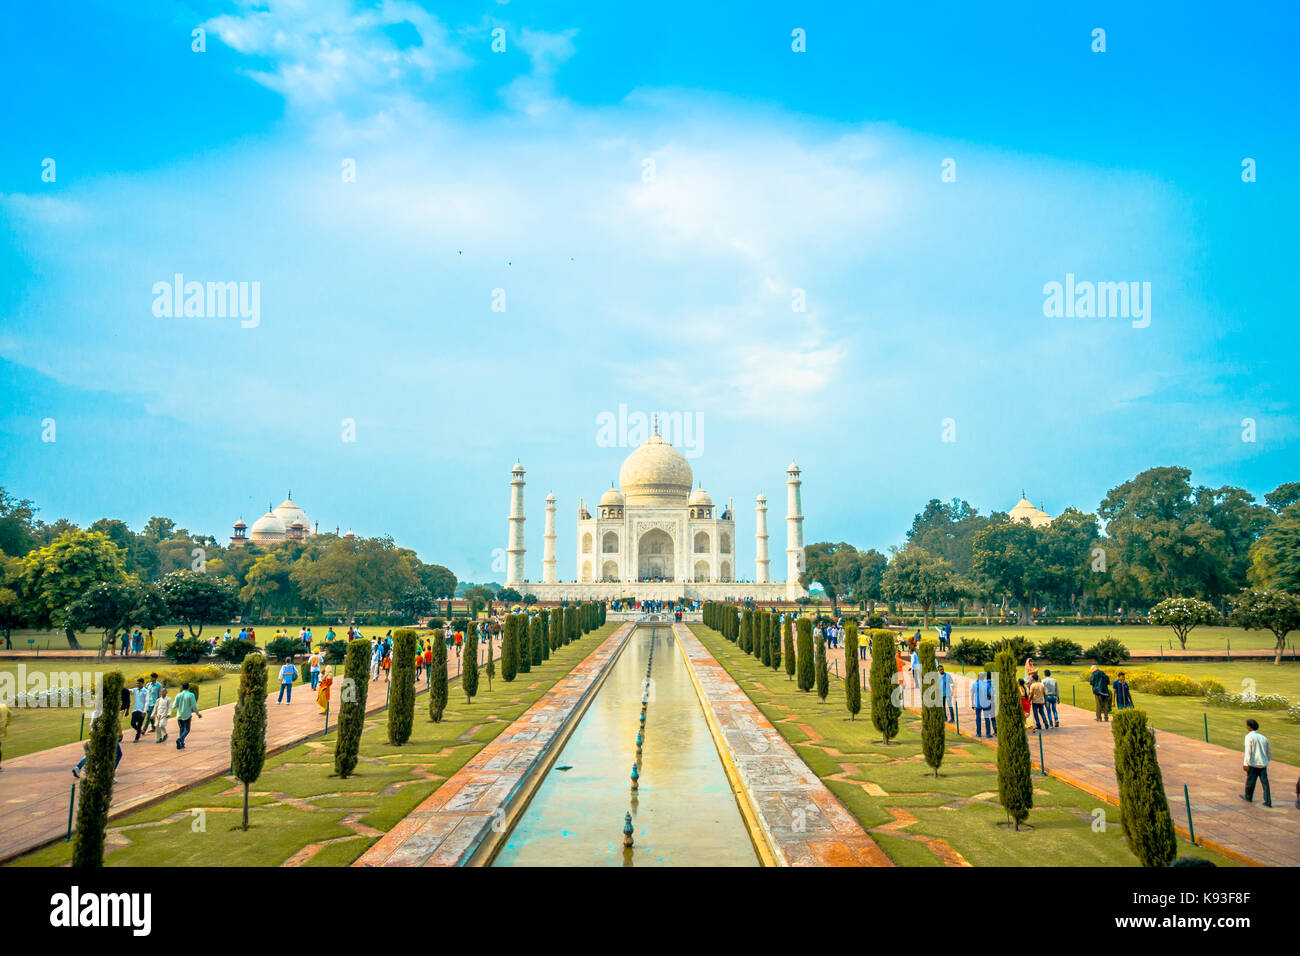 Agra, Indien - 20. September 2017: Das Taj Mahal ist ein Elfenbein - weißer Marmor mausoleum am südlichen Ufer des Yamuna Flusses in der indischen Stadt Agra, Uttar Pradesh Stockfoto